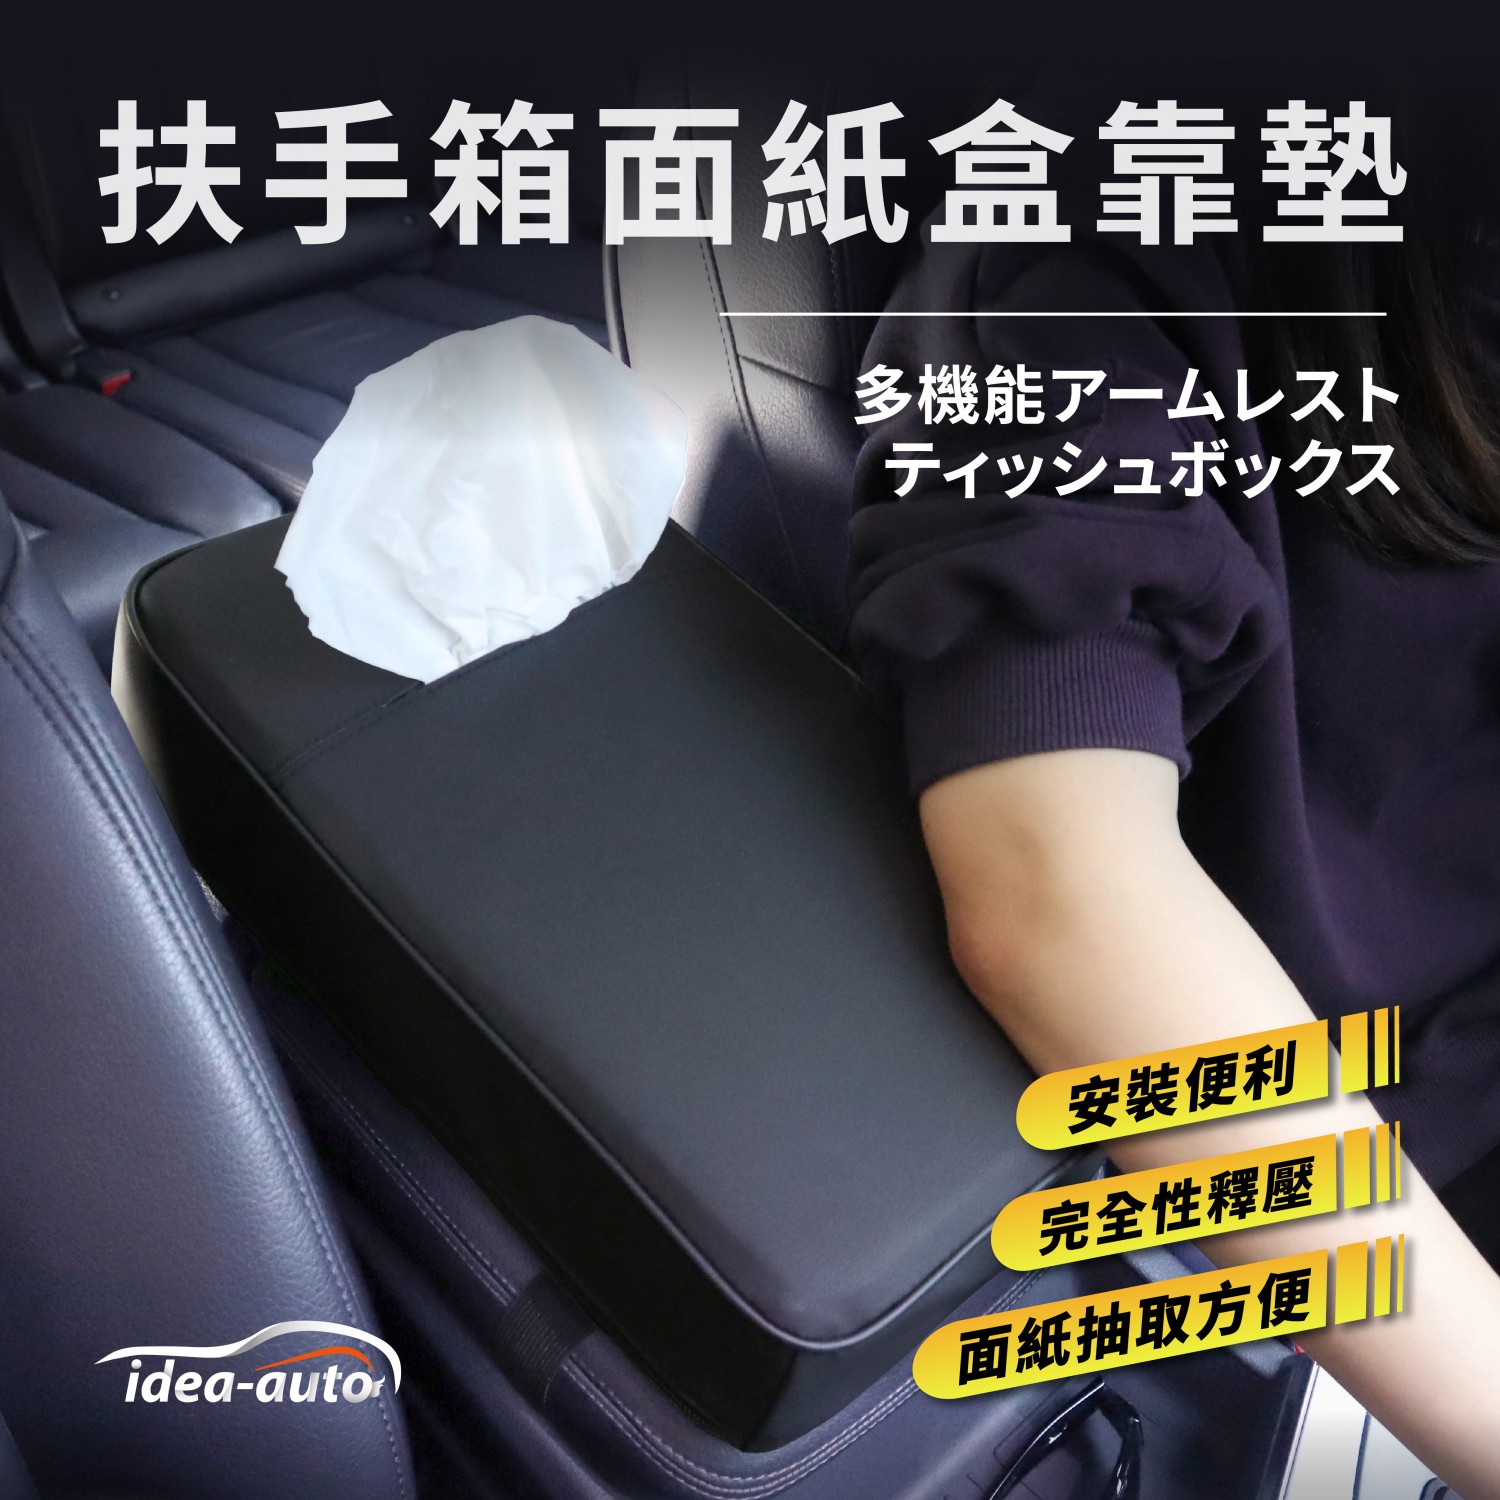 日本【idea-auto】扶手箱面紙盒舒適靠墊